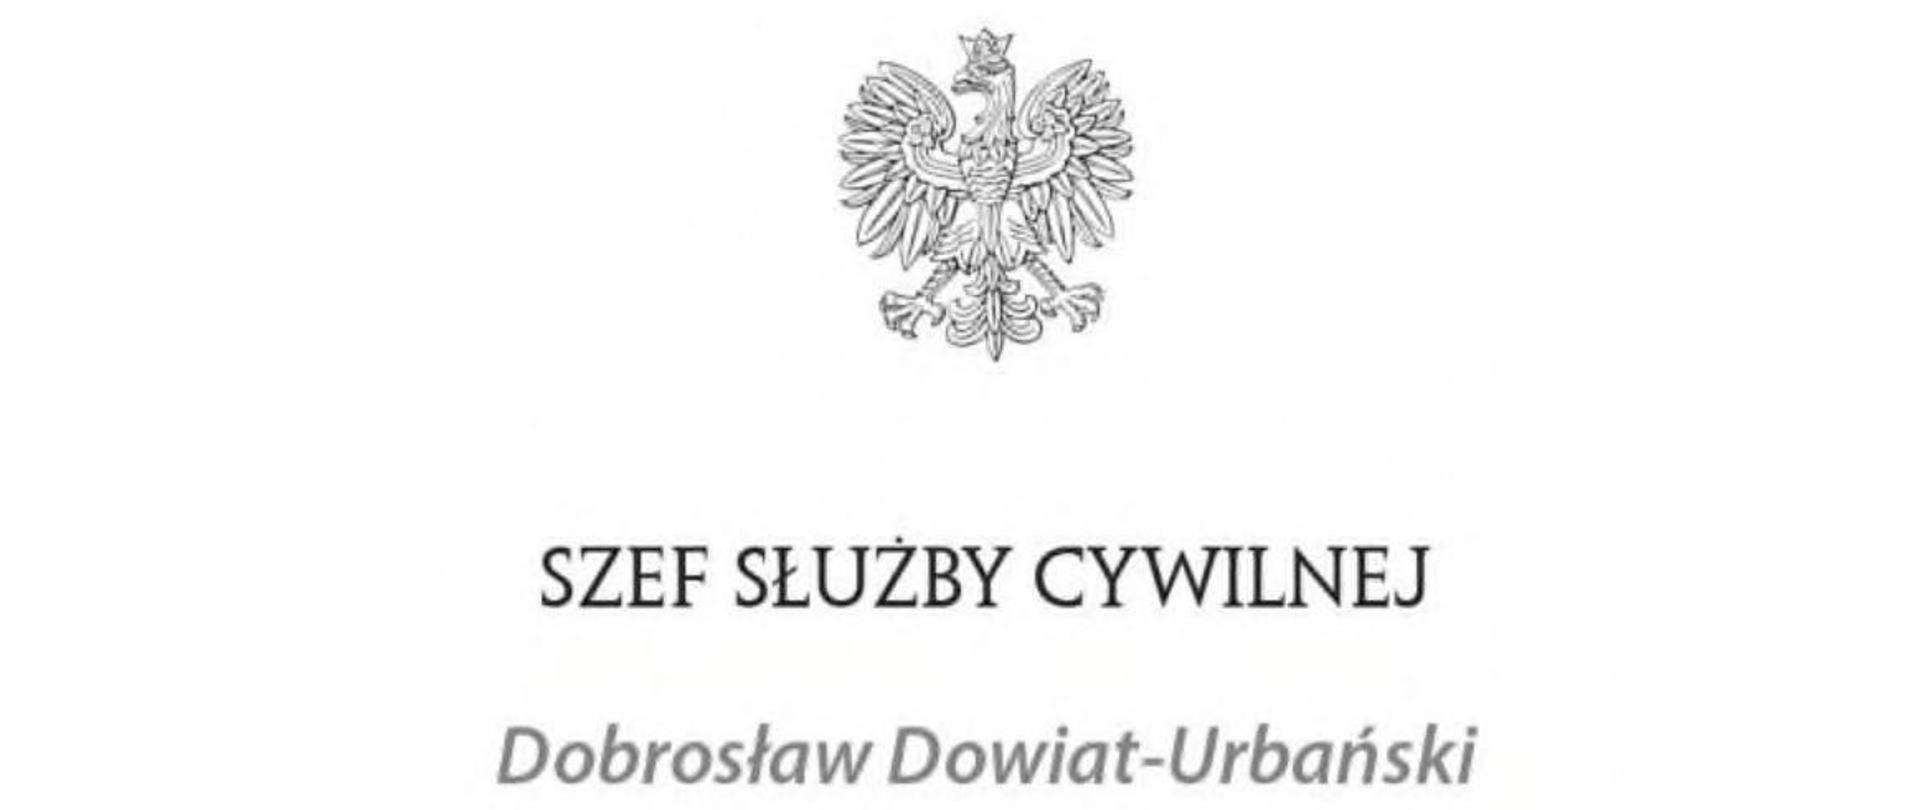 Godło Polski pod nim napis: Szef Służby Cywilnej Dobrosław Dowiat-Urbański